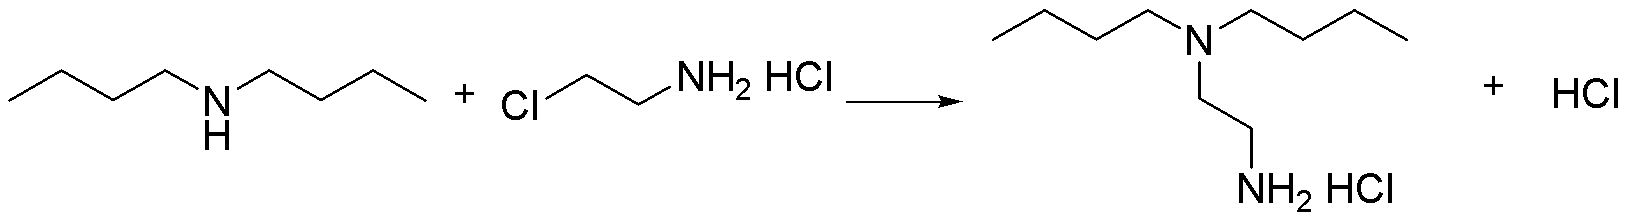 Preparation method of N,N-di-n-butylethylenediamine